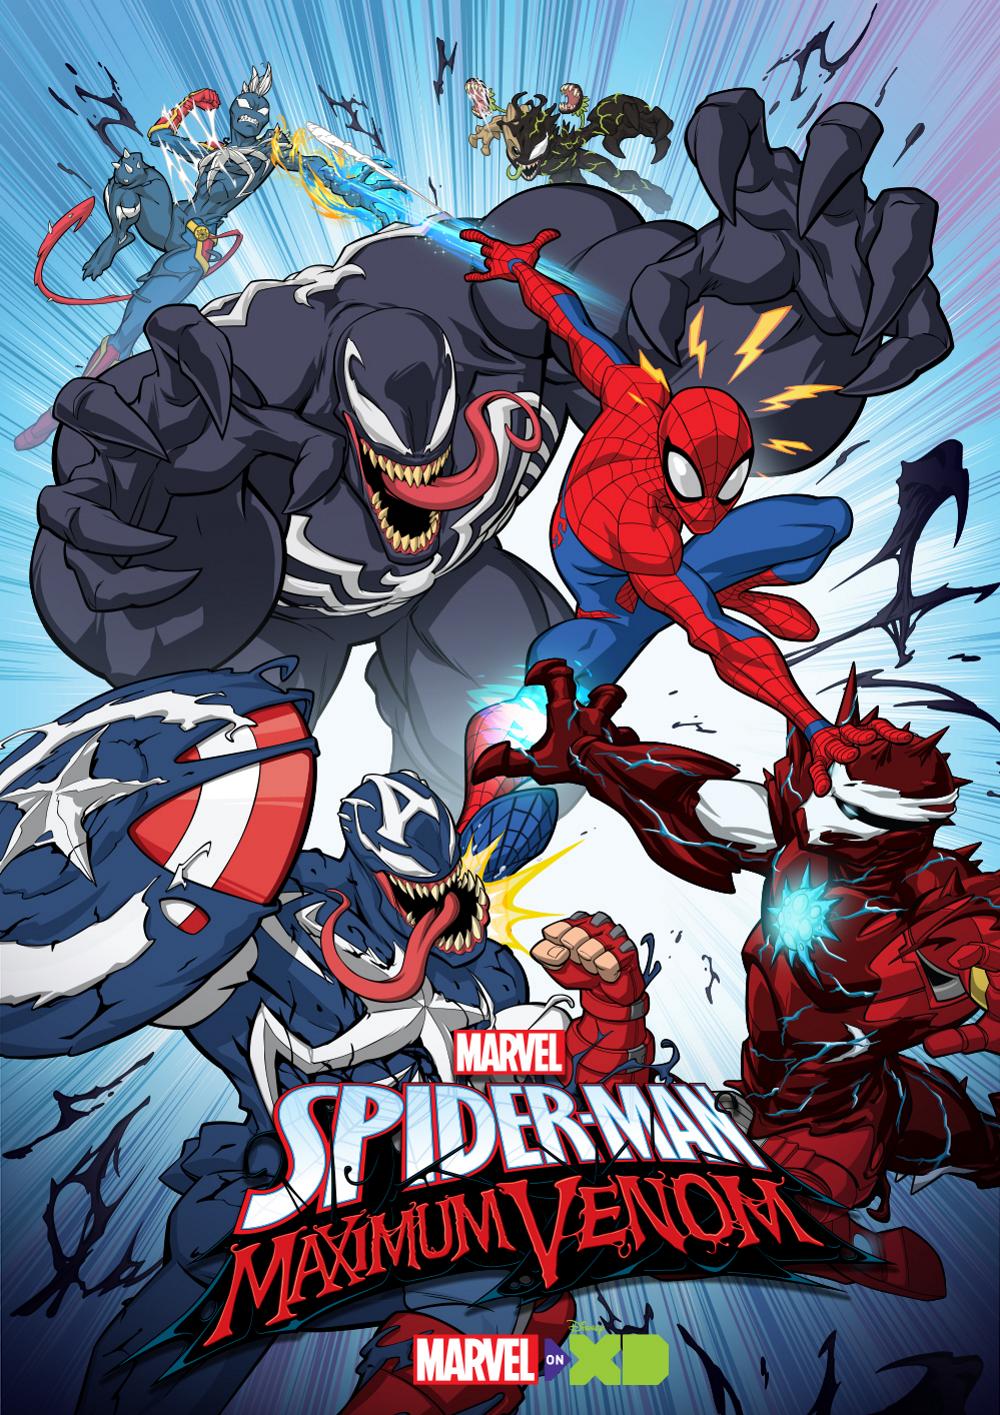 Marvel's Spider-Man: Maximum Venom